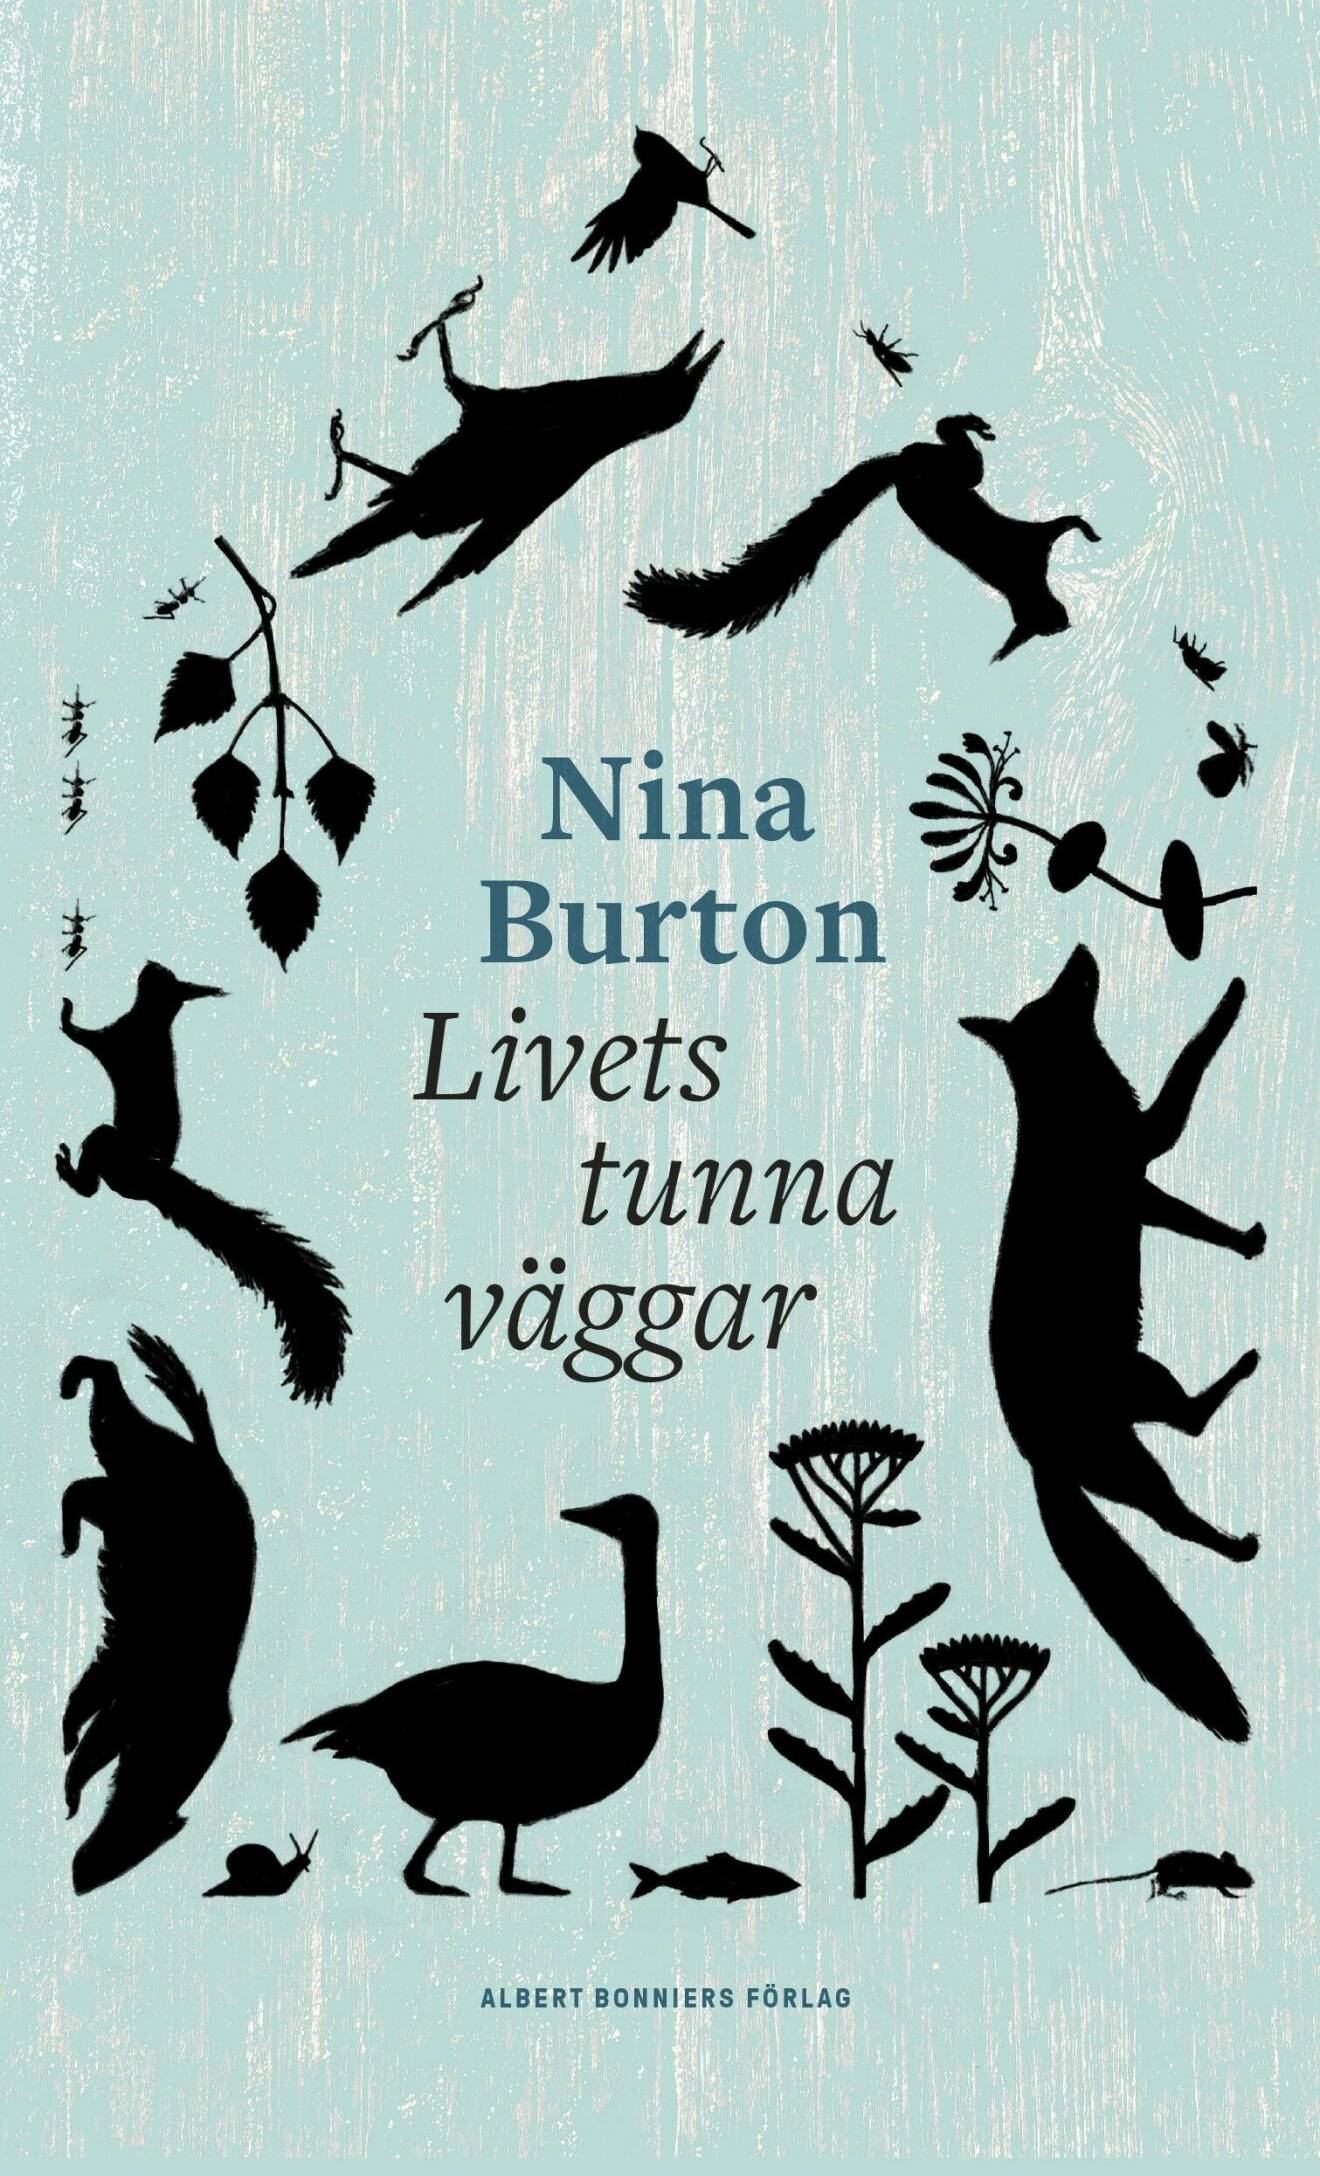 Livets tunna väggar av Nina Burton (Albert Bonniers Förlag).